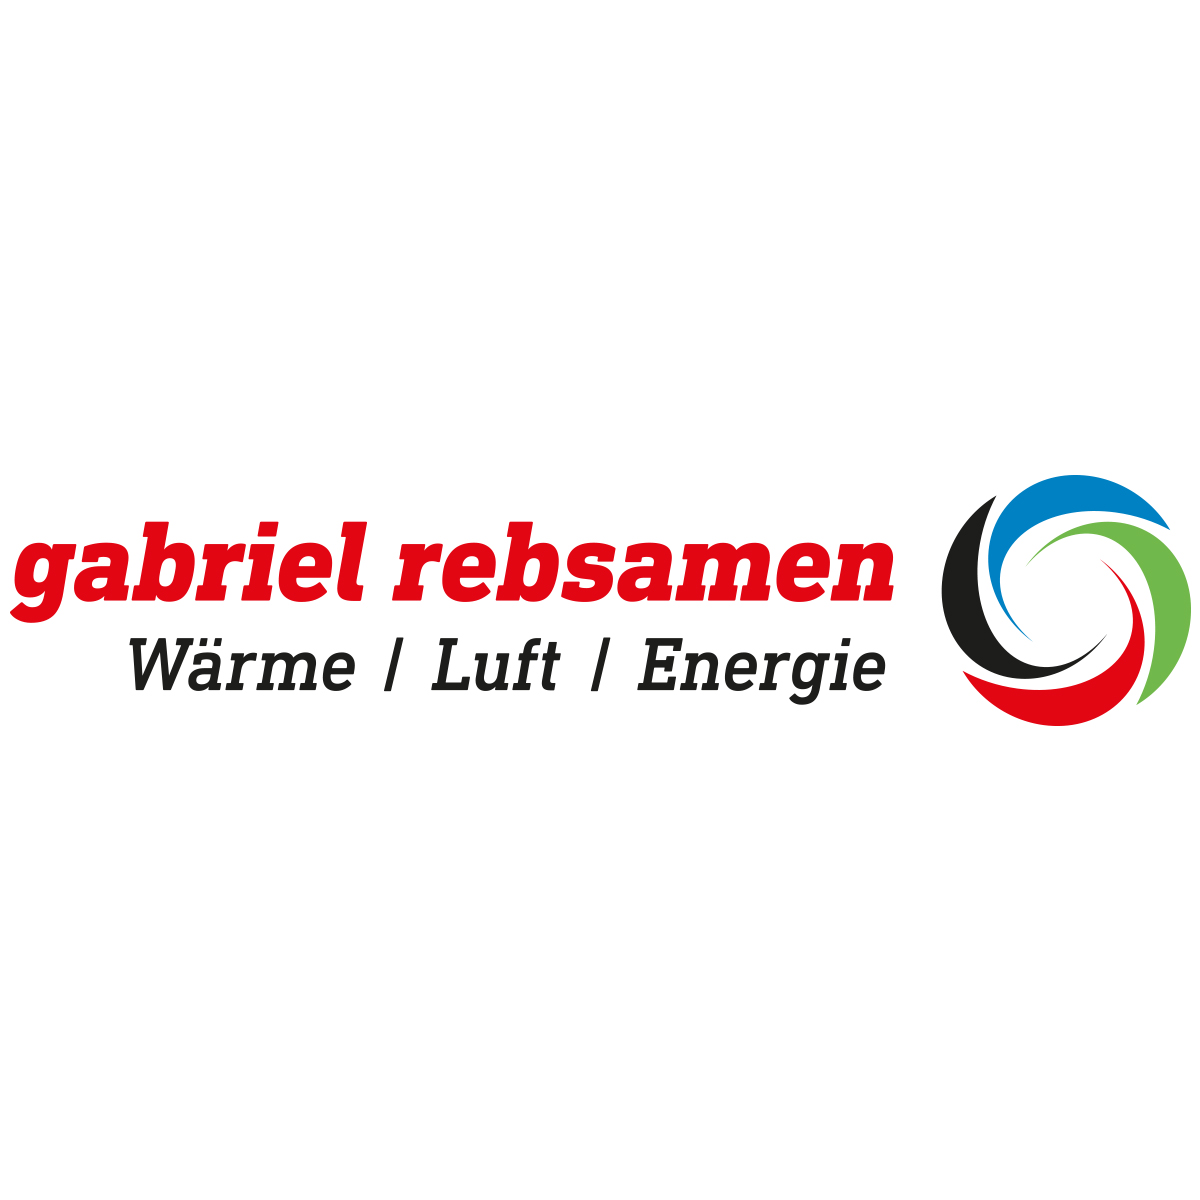 (c) Gabrielrebsamen.ch